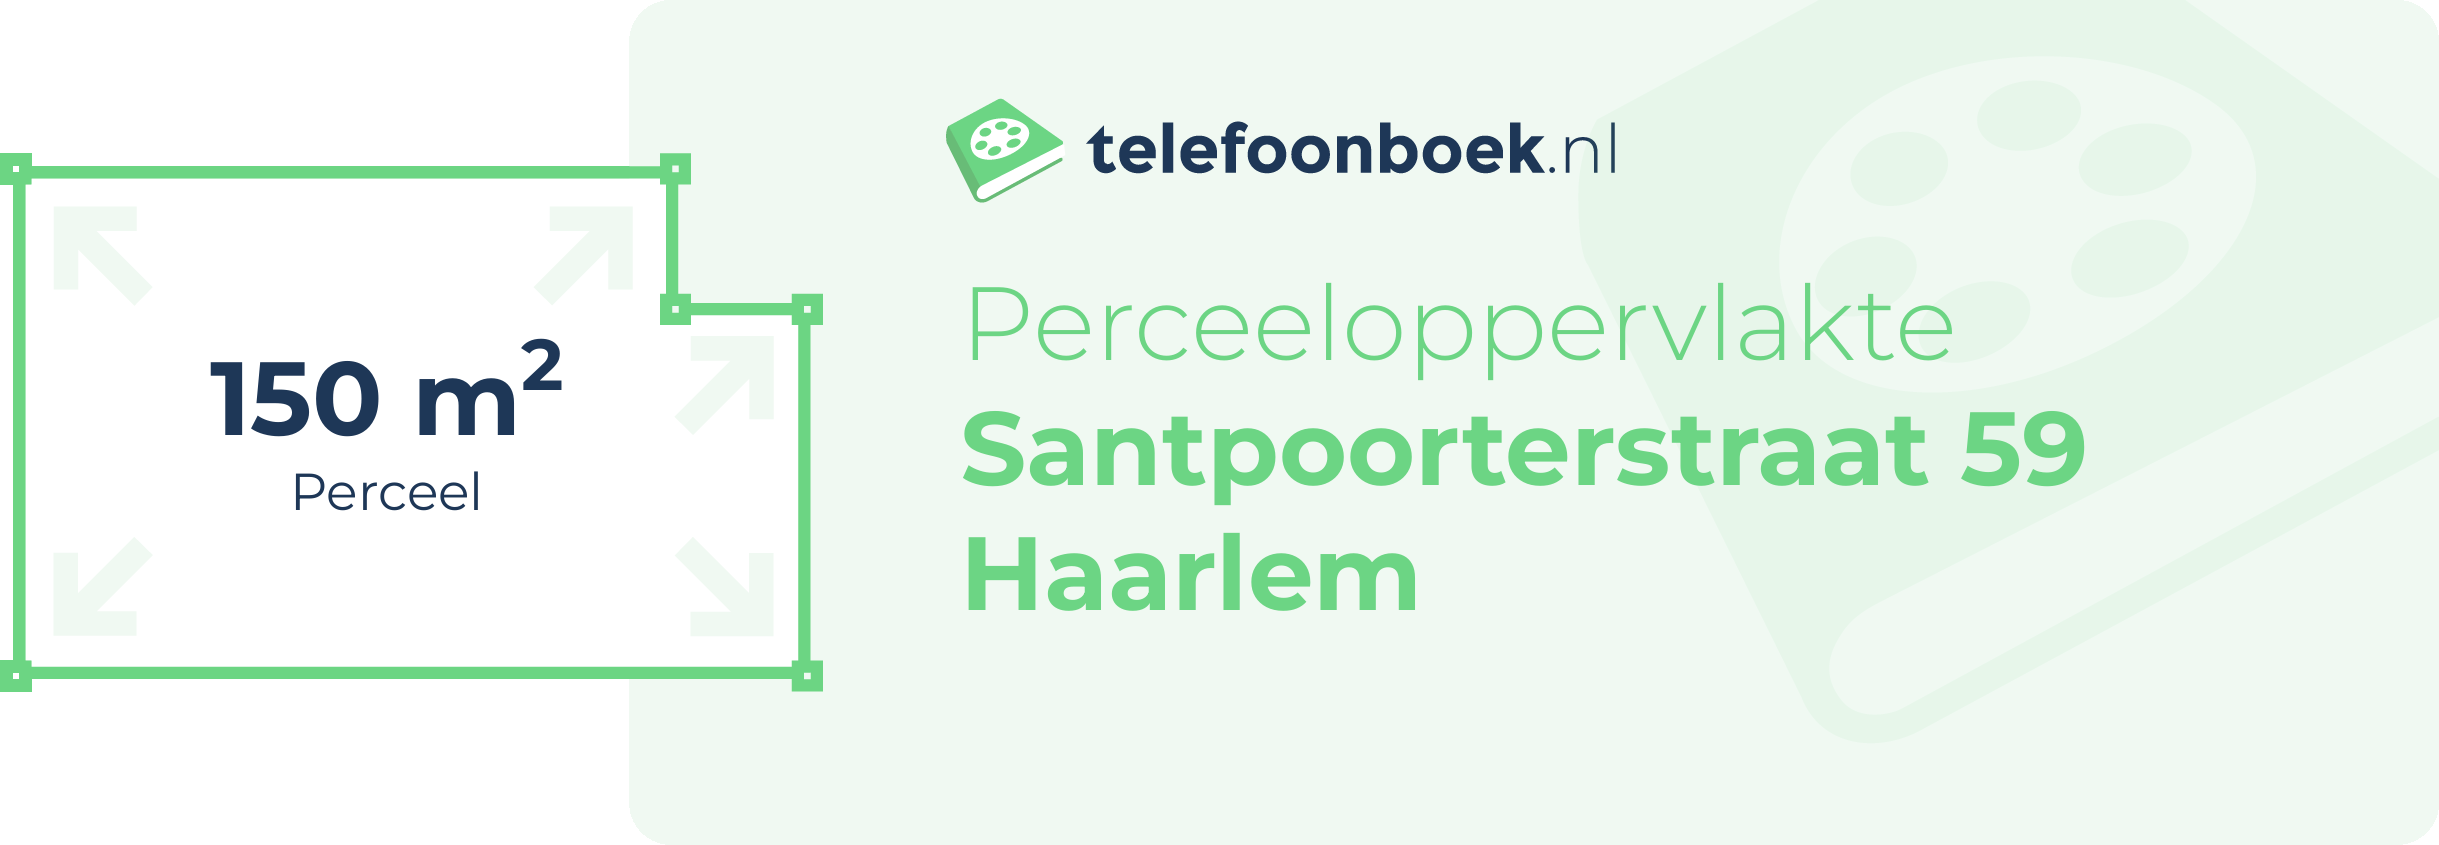 Perceeloppervlakte Santpoorterstraat 59 Haarlem